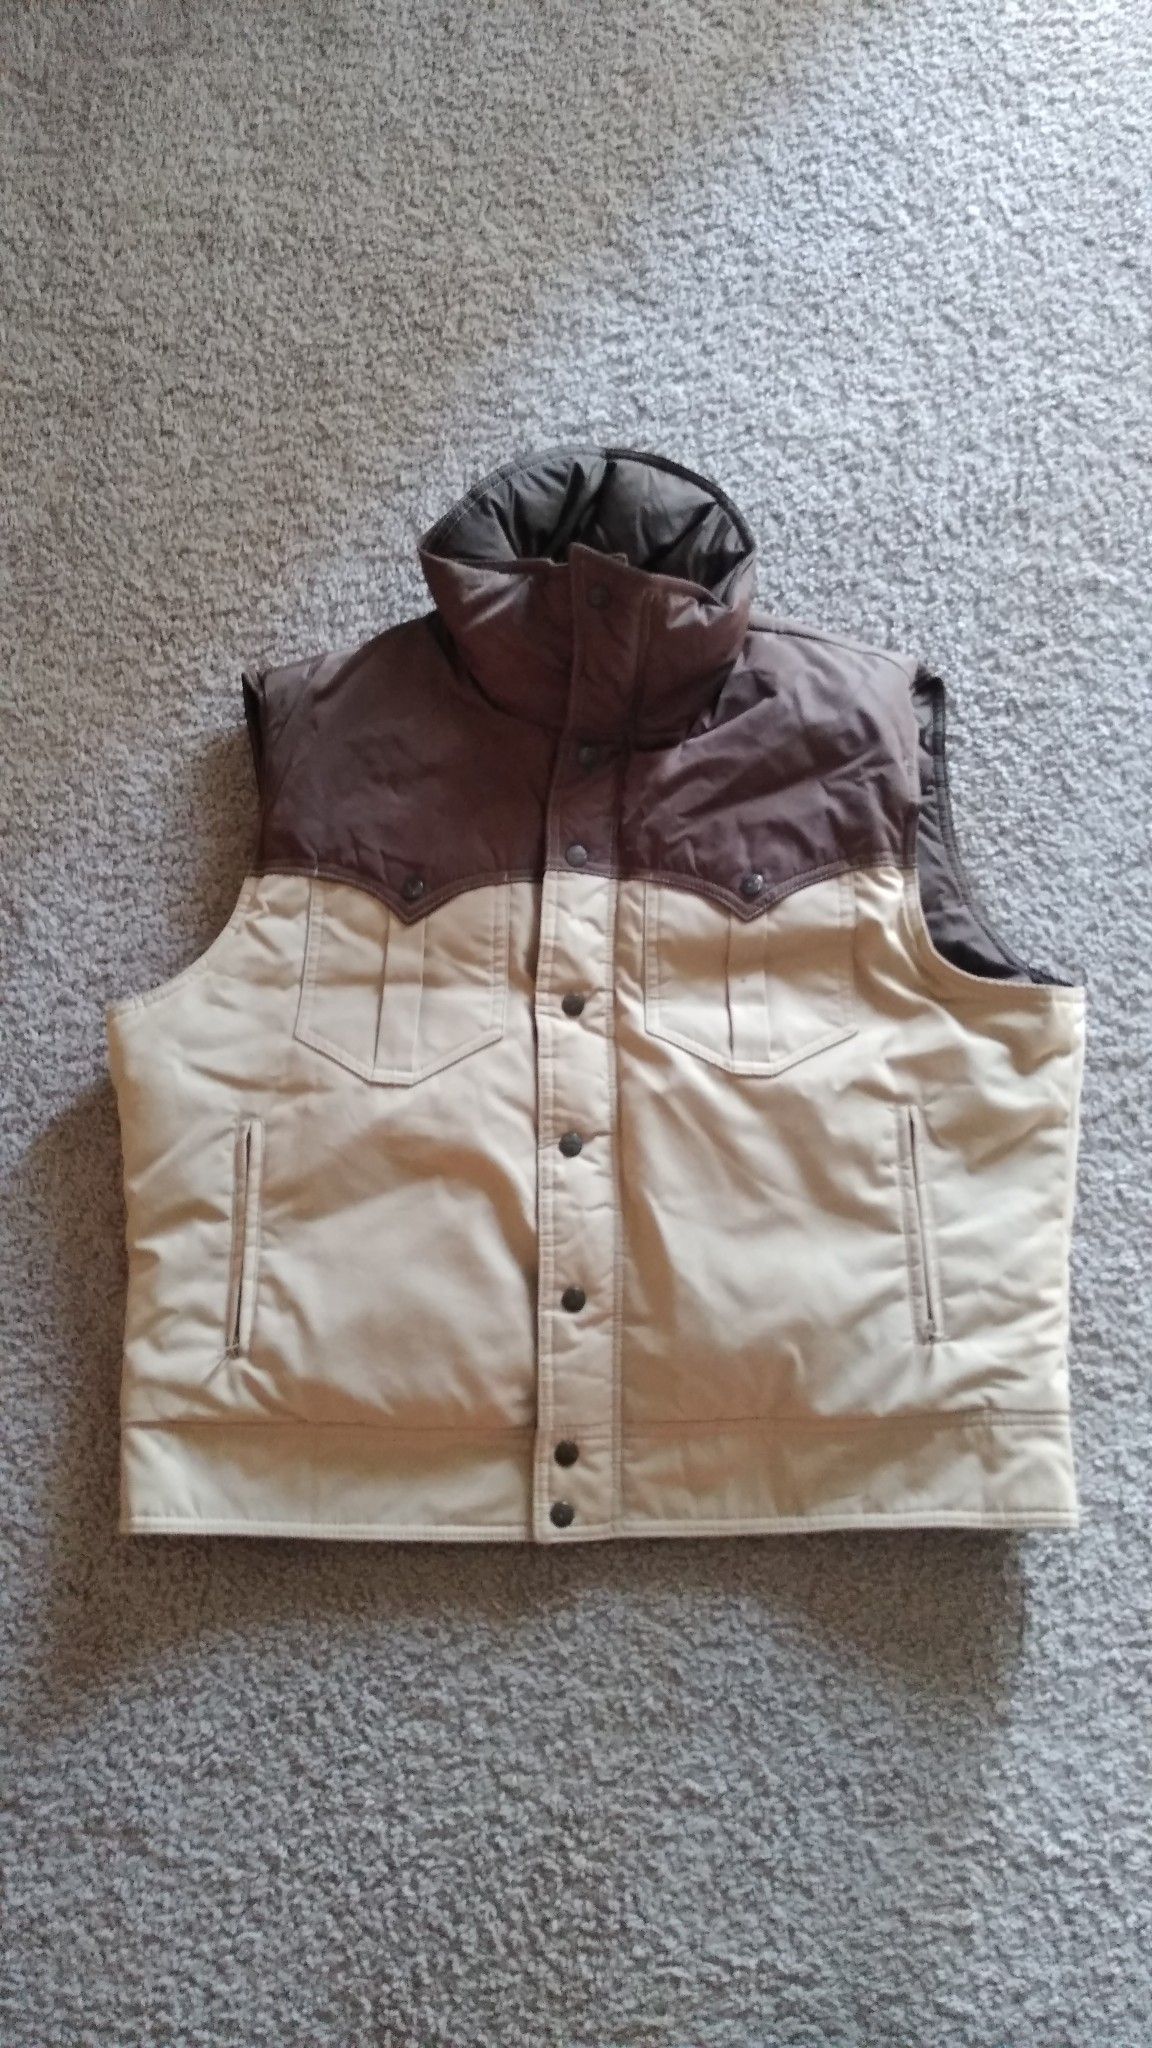 Beautiful Powder Gear Vest Jacket , size XL ( excellent condition )